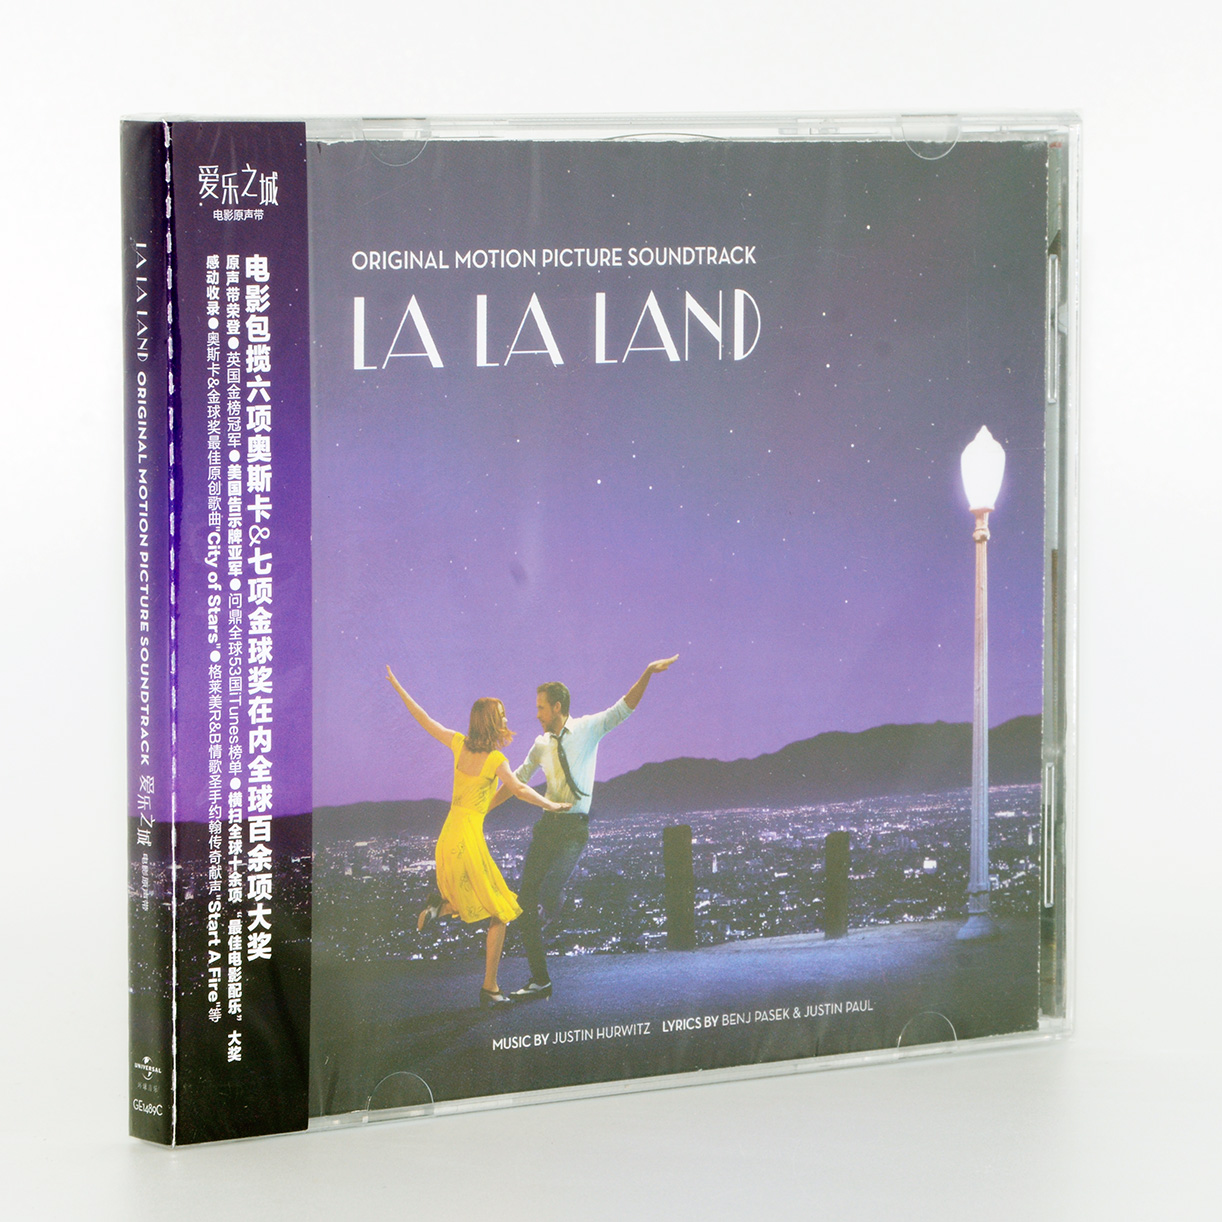 原装正版唱片 La La Land OST爱乐之城电影原声带音乐歌曲 CD碟